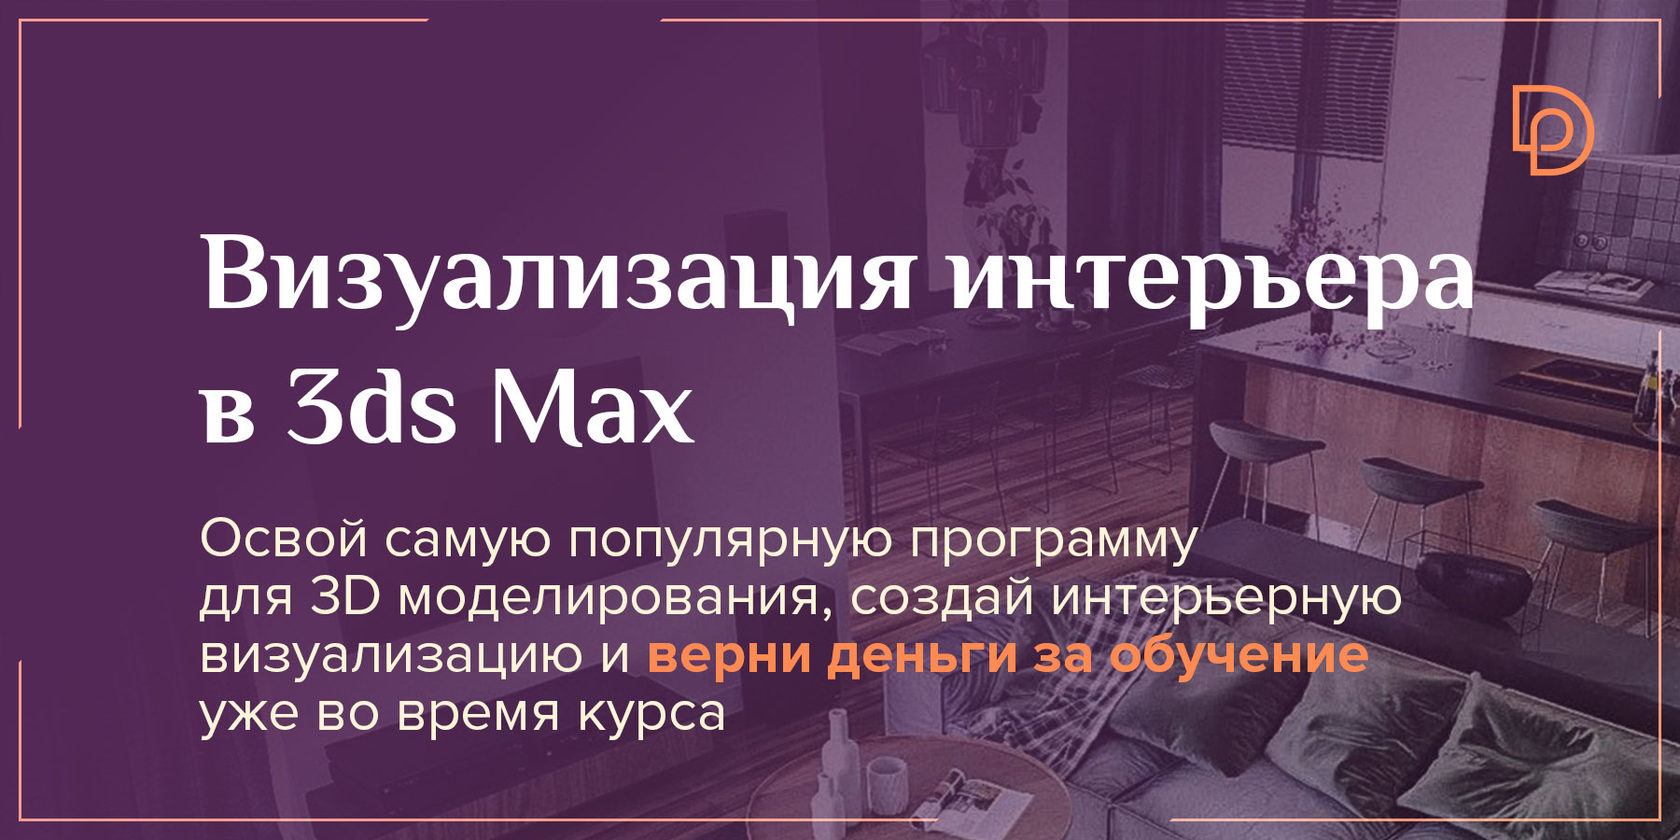 Онлайн Курс 3ds Max